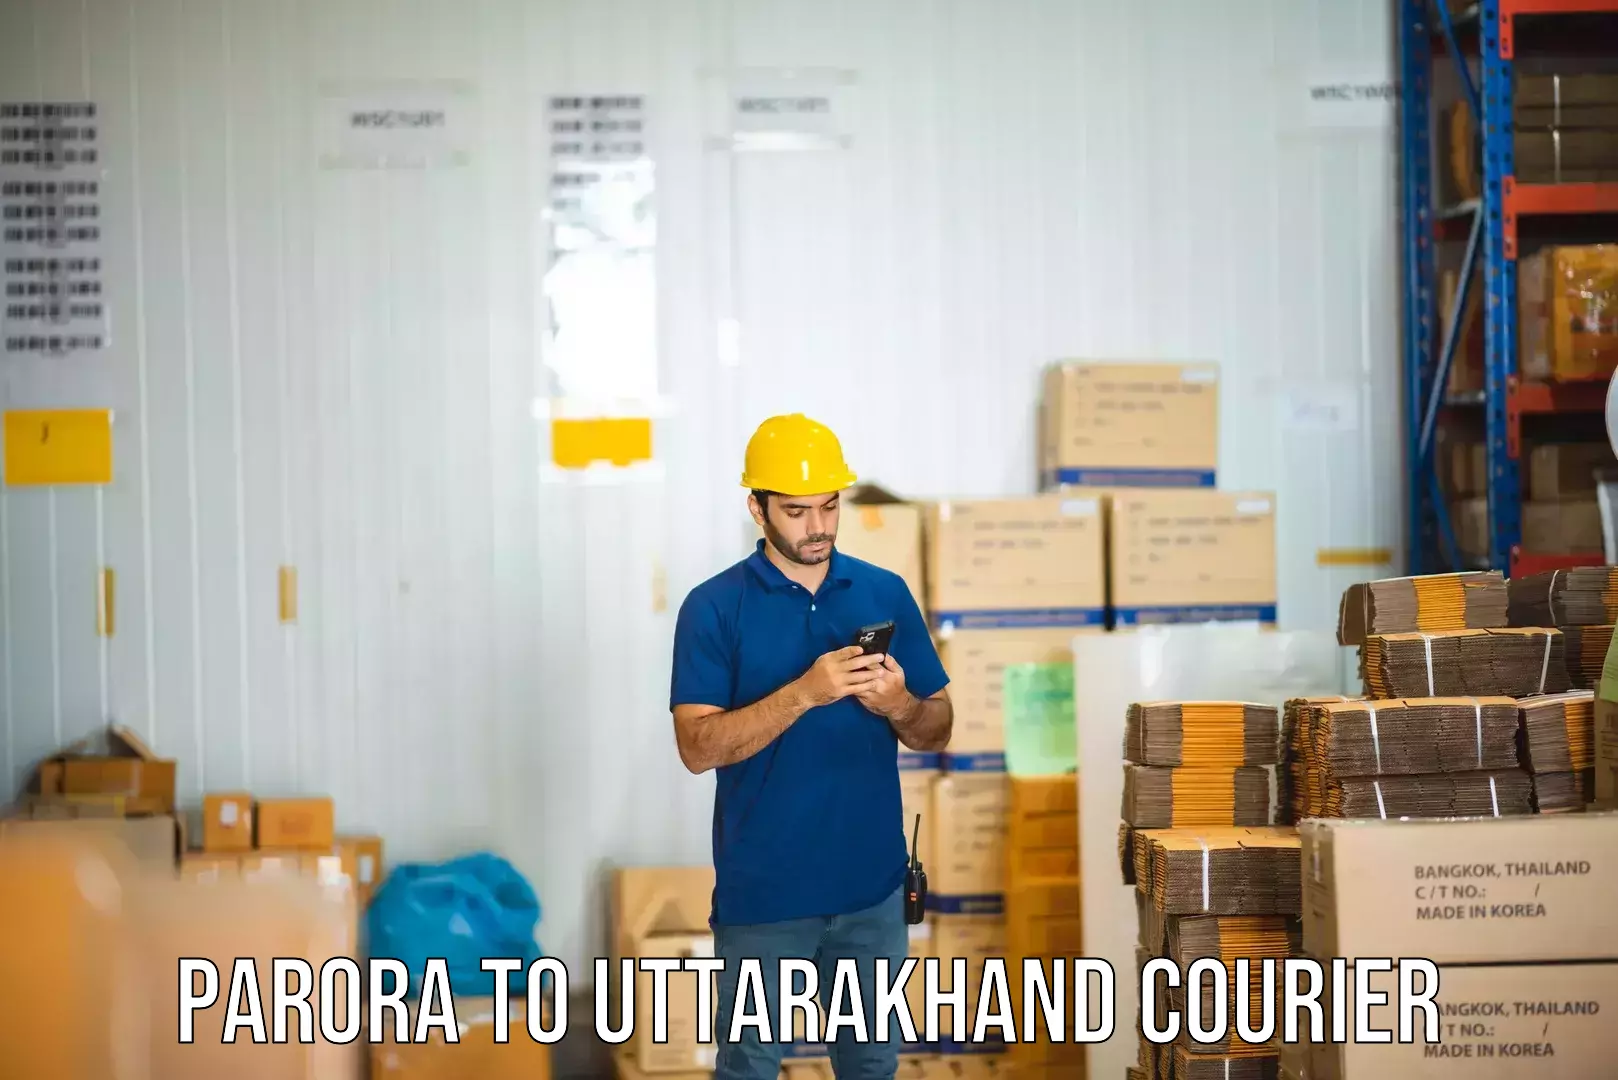 E-commerce fulfillment Parora to Uttarakhand